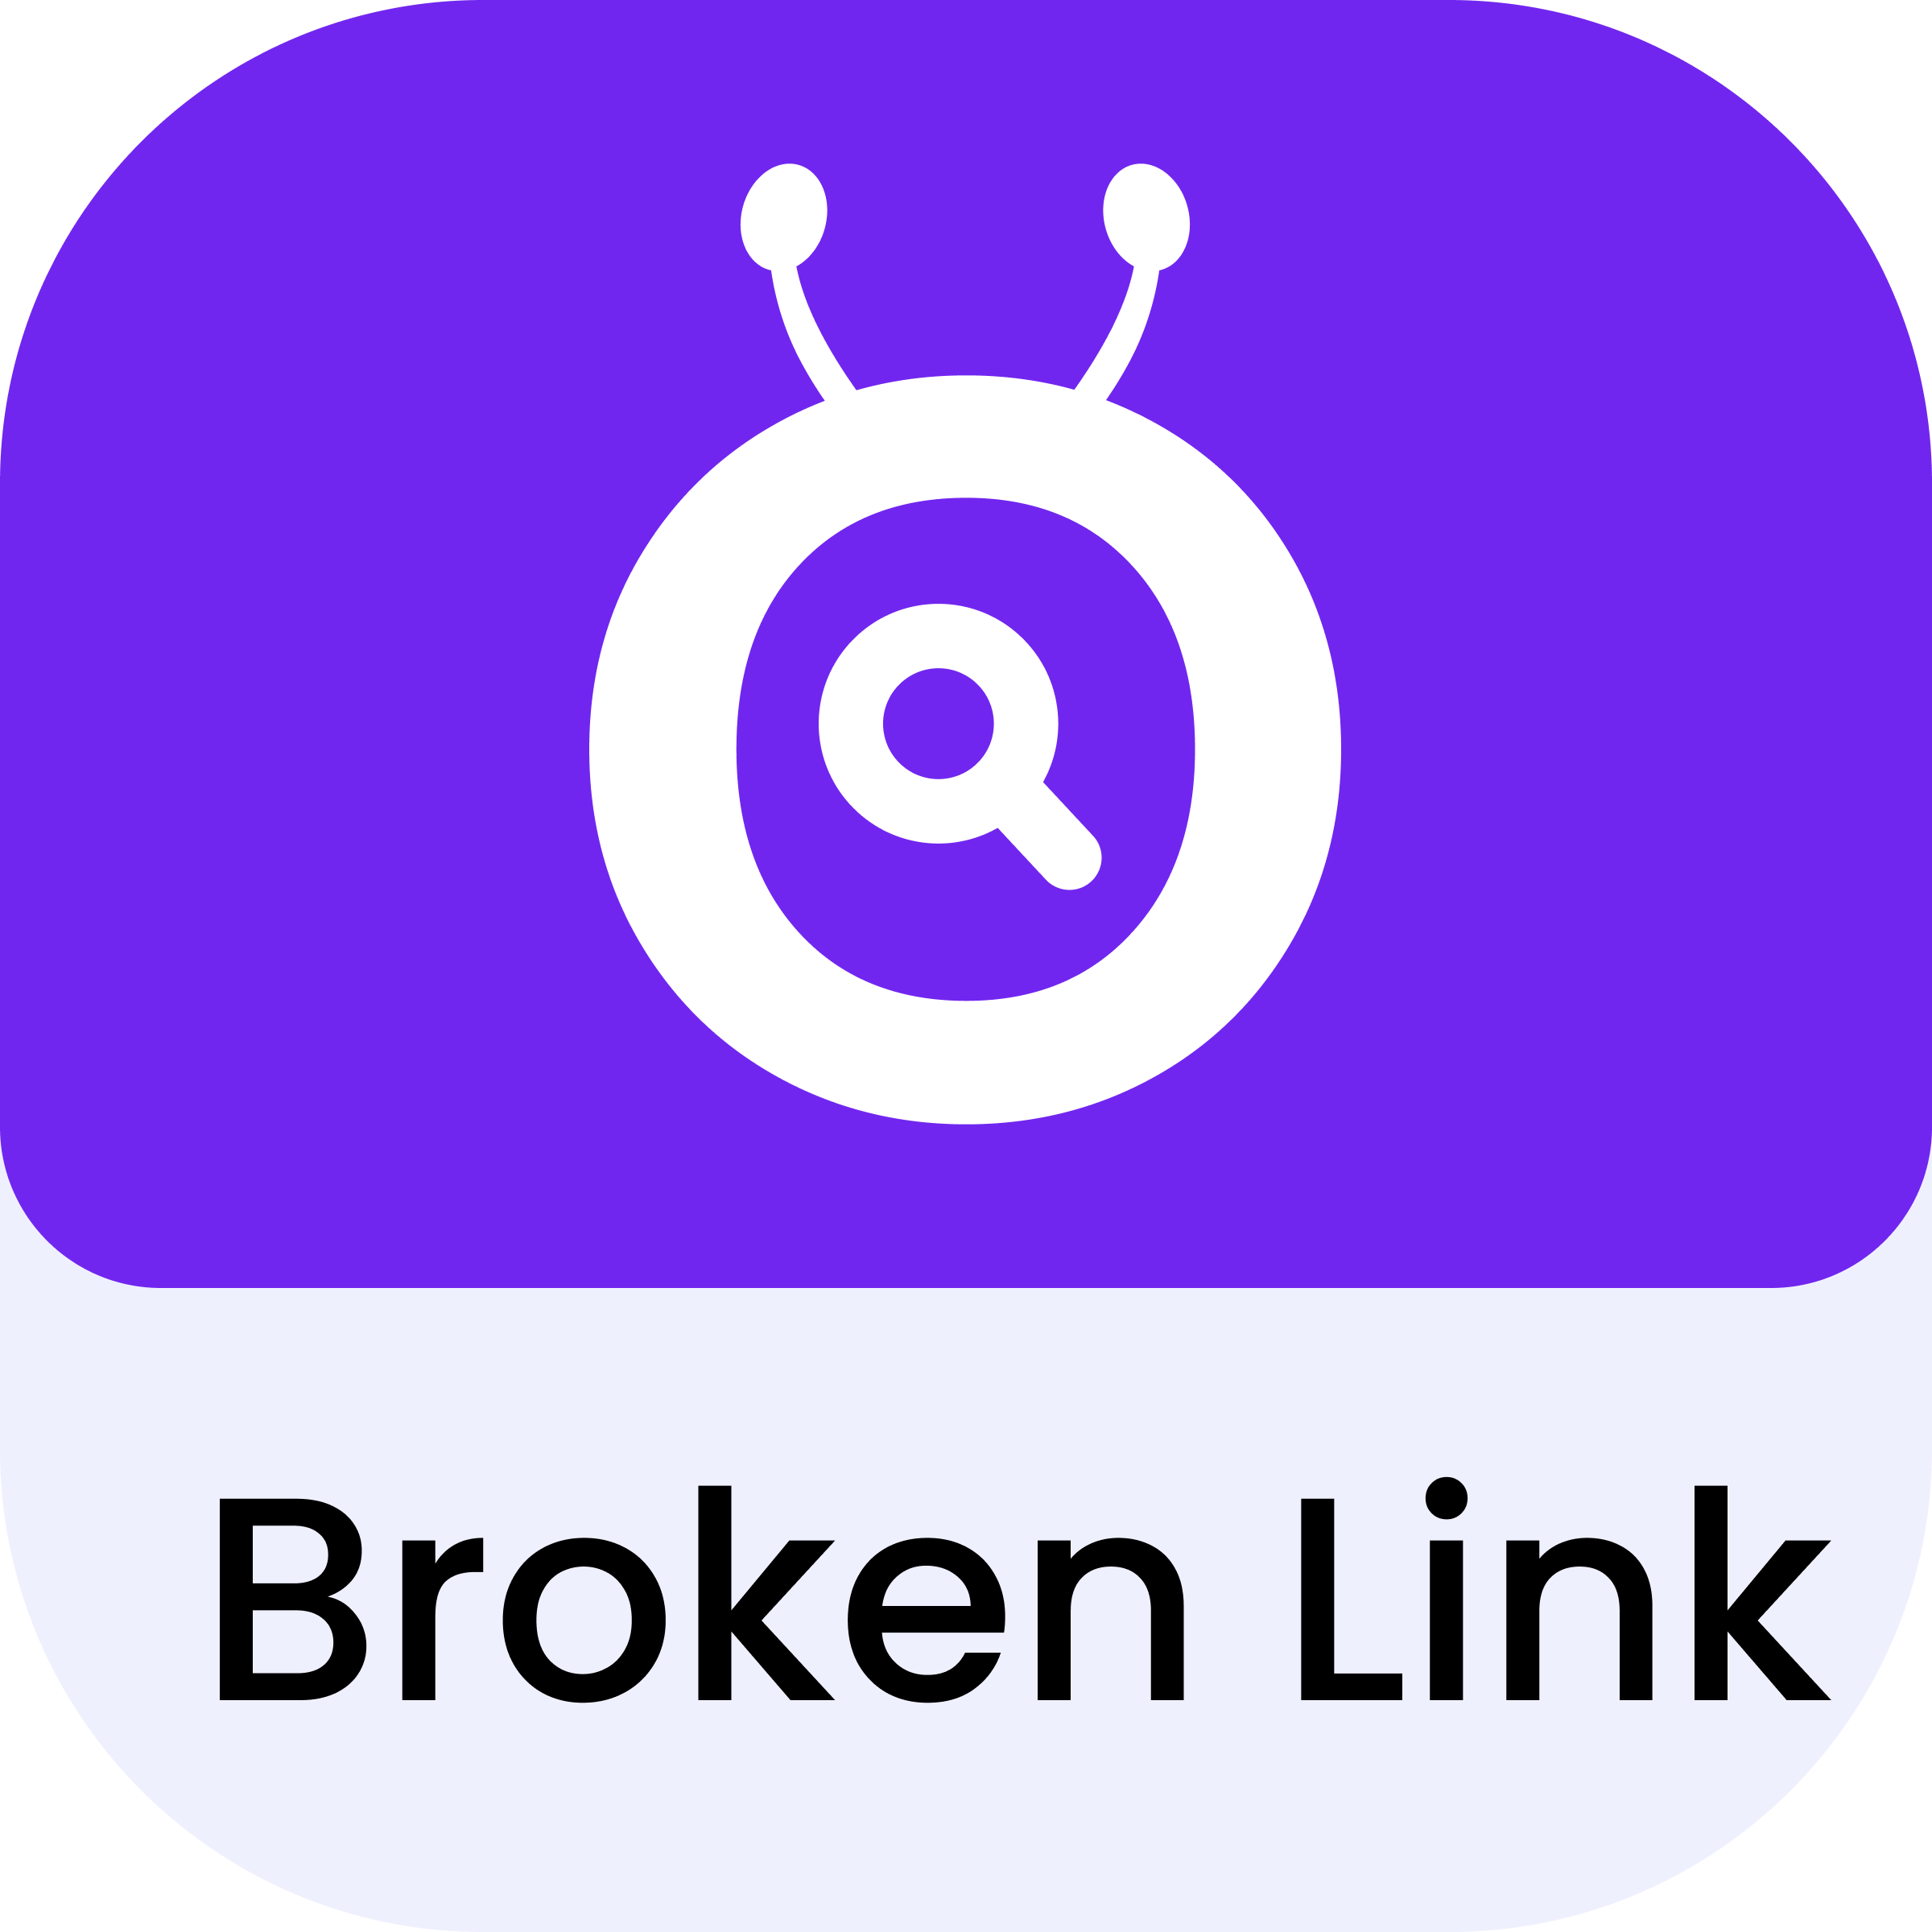 Broken Link 404/301 Redirect